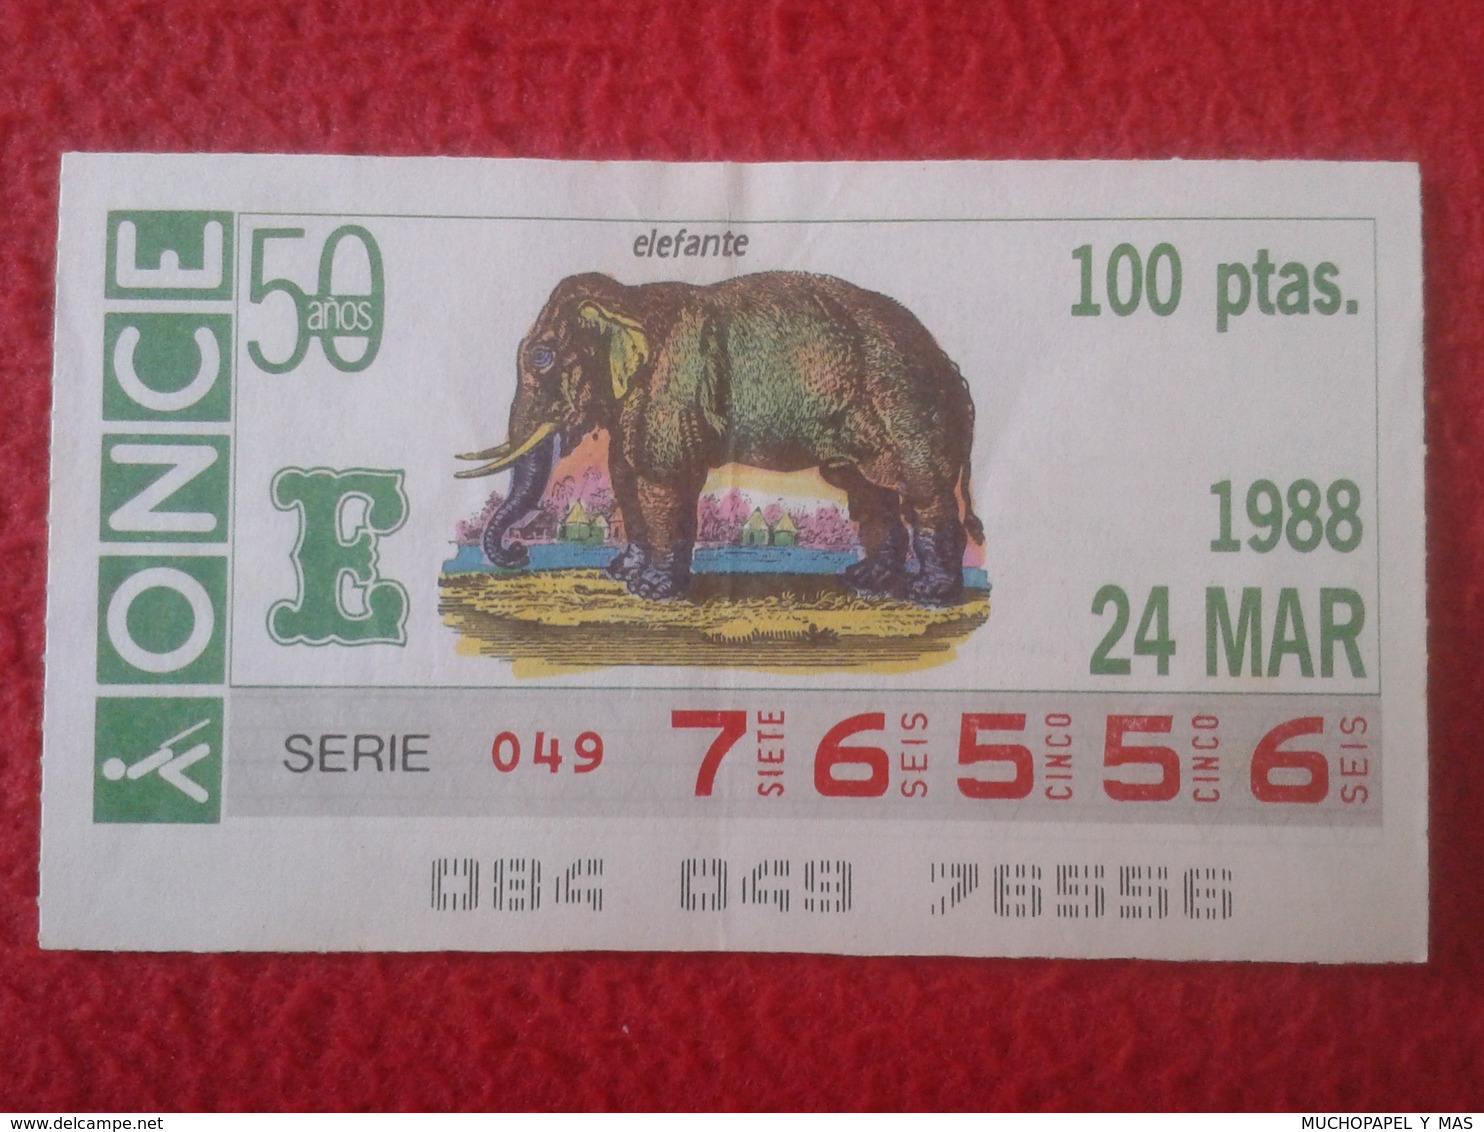 CUPÓN DE ONCE SPANISH LOTTERY LOTERIE CIEGOS SPAIN LOTERÍA ESPAÑA FAUNA FAUNE 1988 ELEFANTE ELEPHANT éléphant  ANIMAL - Billetes De Lotería